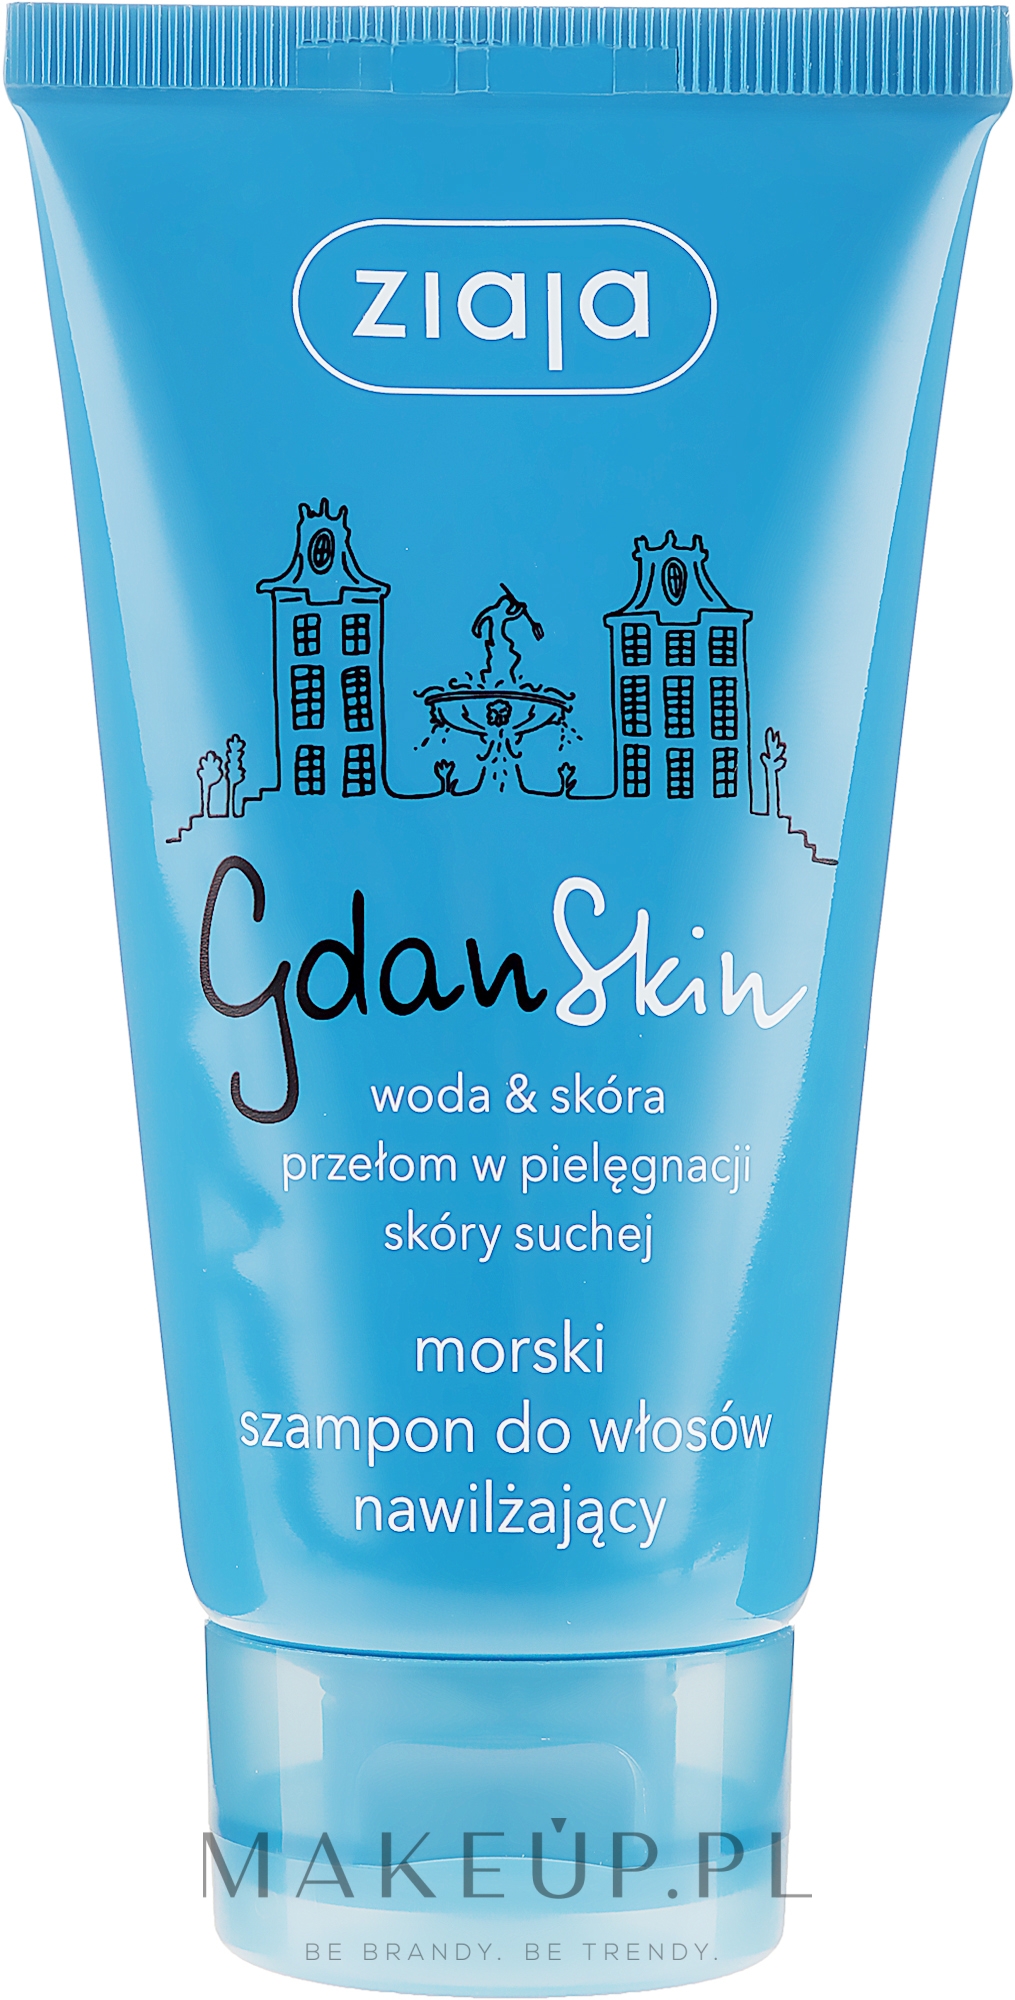 ziaja gdanskin morski szampon nawilżający wizaz